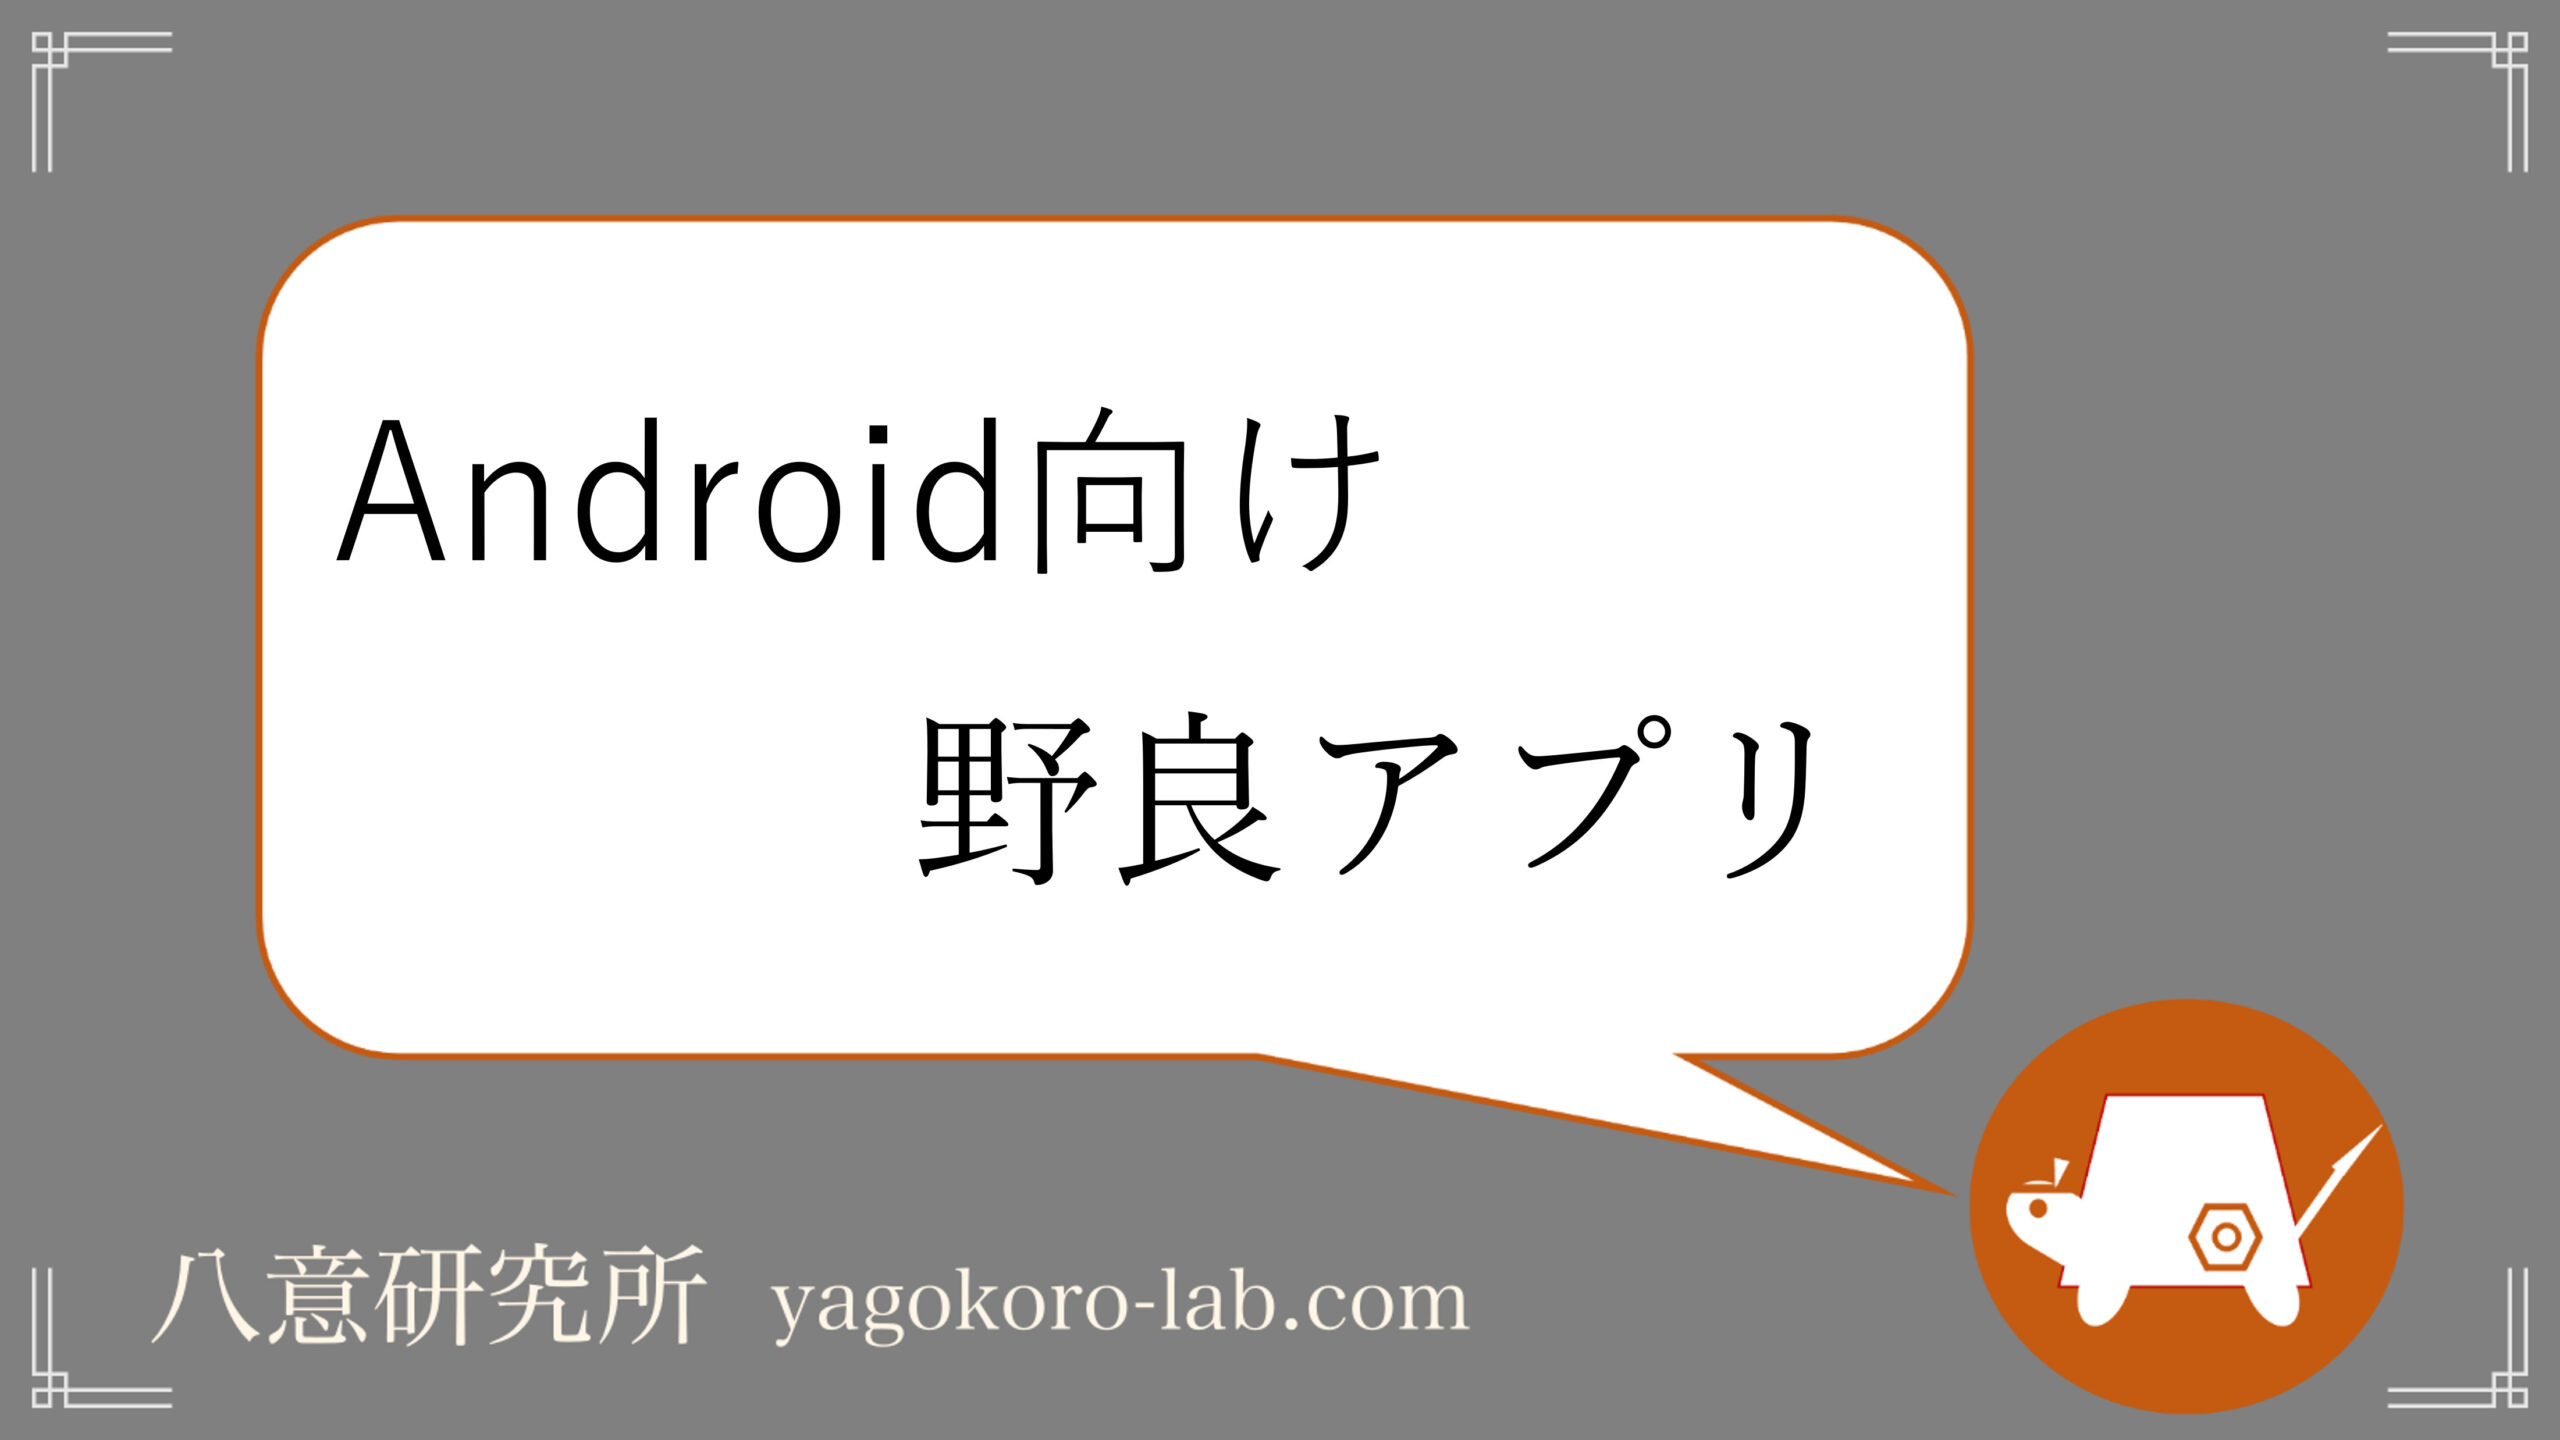 Android 最新版 おすすめの野良アプリ Apkインストール方法も ヤゴコロ研究所